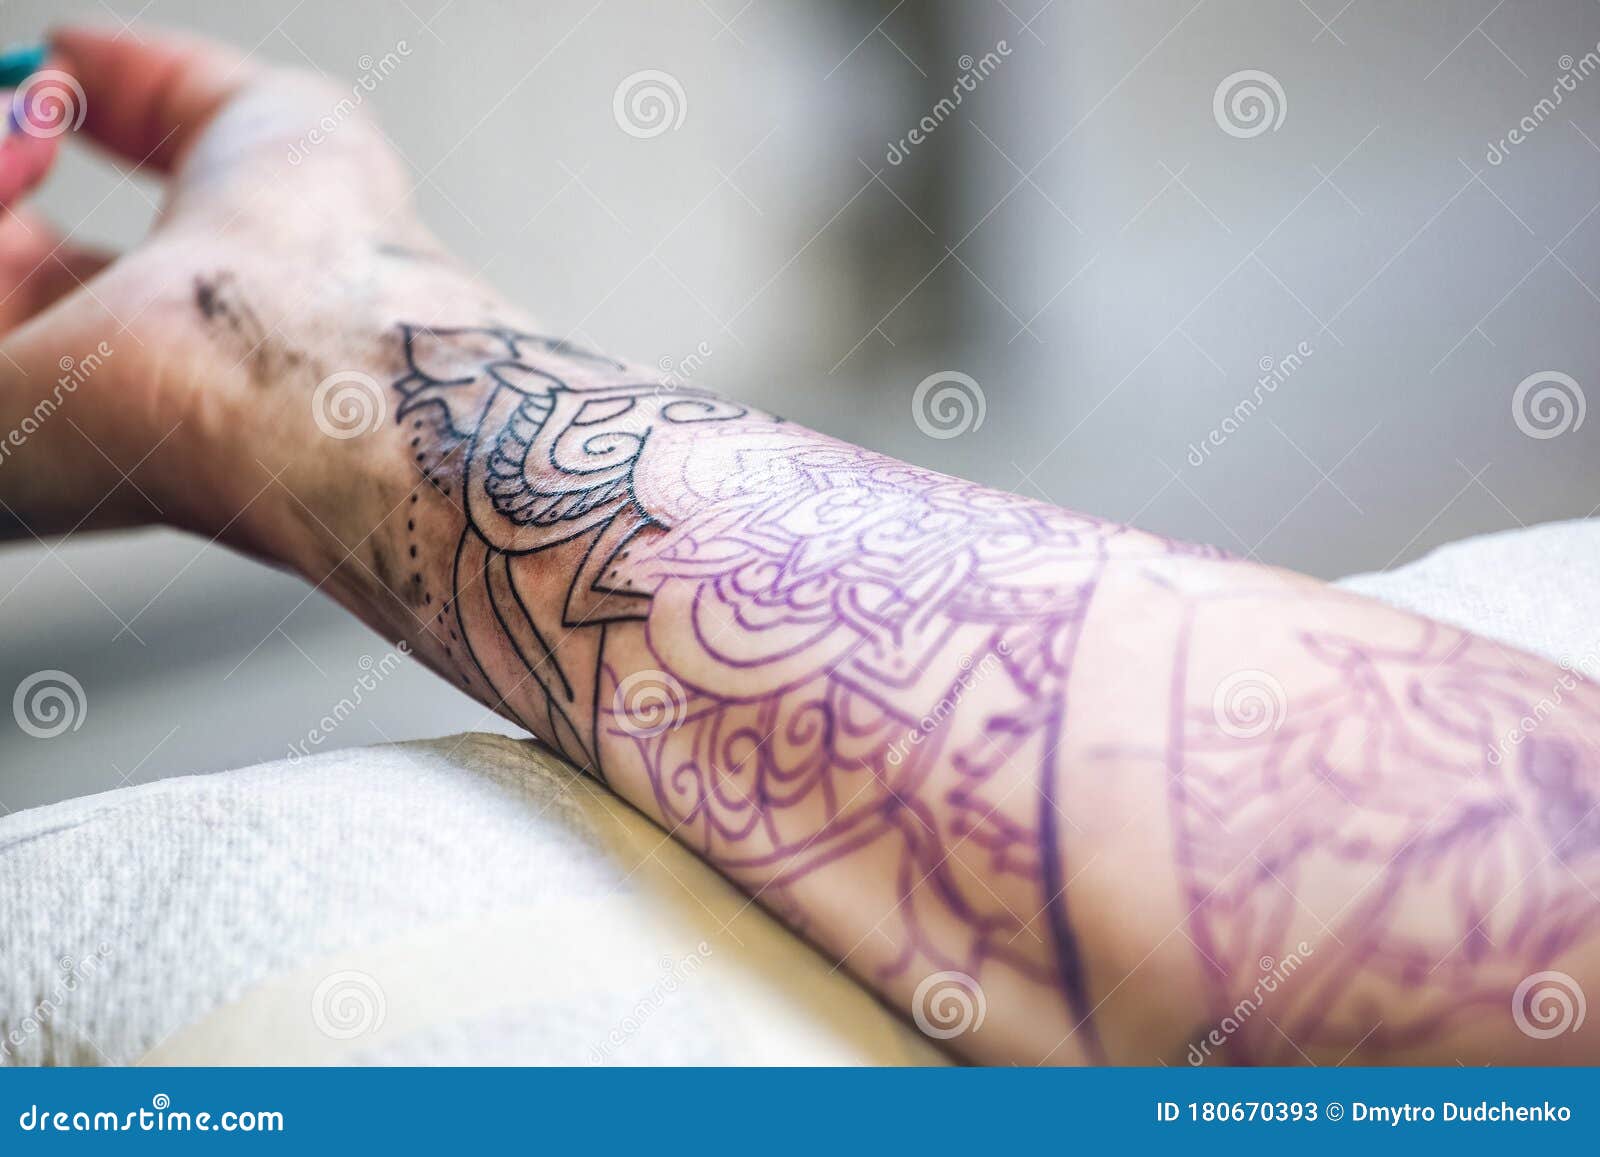 El Maestro De Tatuajes Hace Un Tatuaje Con Estampado En Tinta